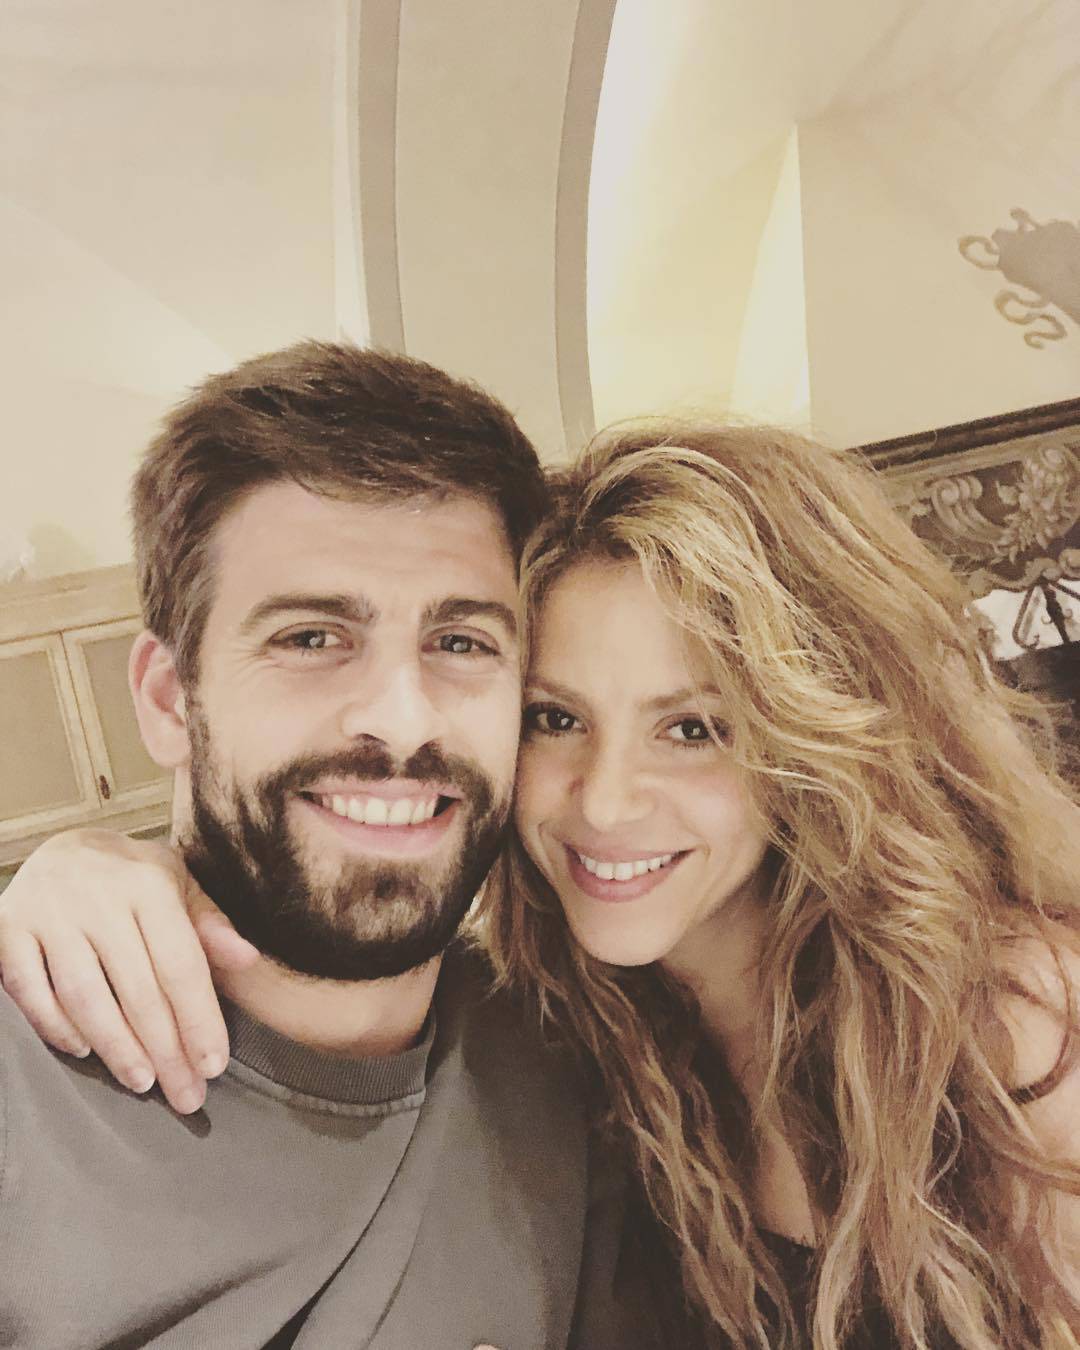 Shakira se ne želi udati: 'Brak me plaši, želim biti ljubavnica'